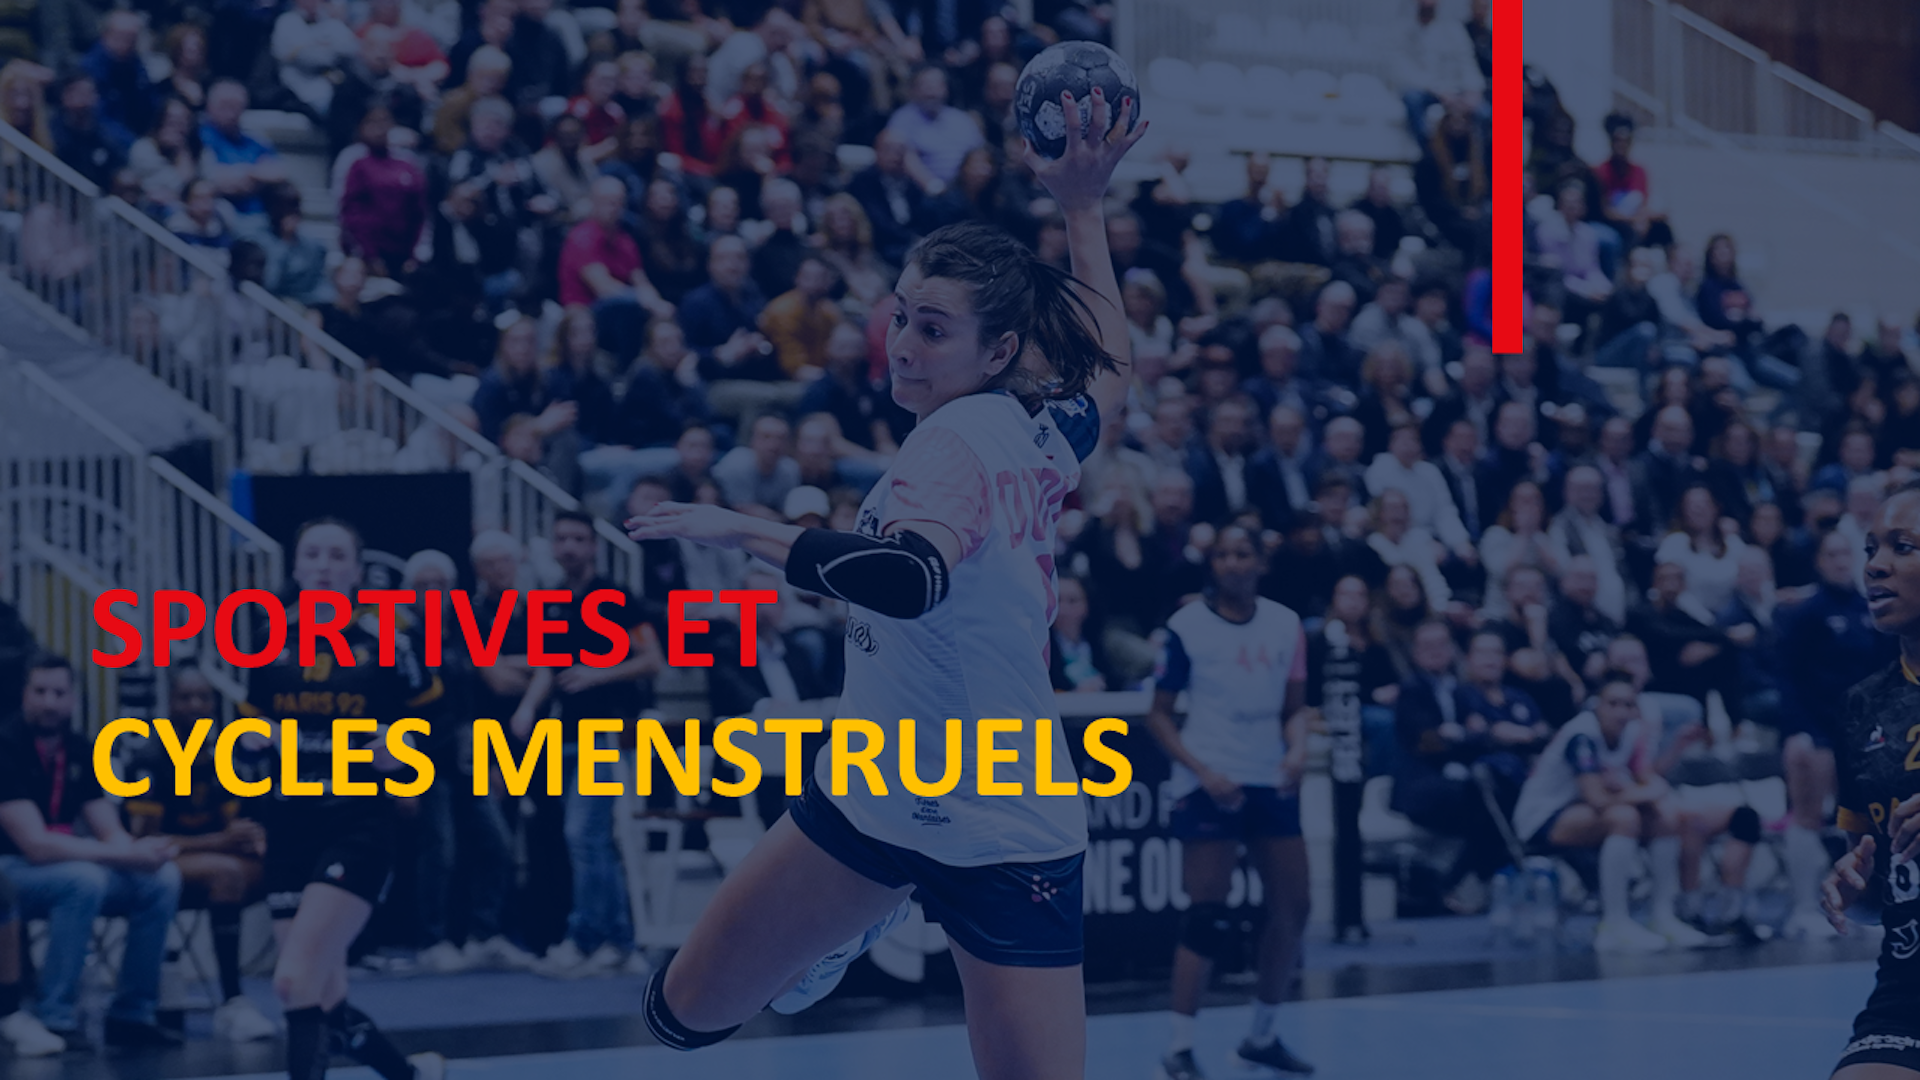 Sportives et Cycles menstruels - Neptunes de Nantes